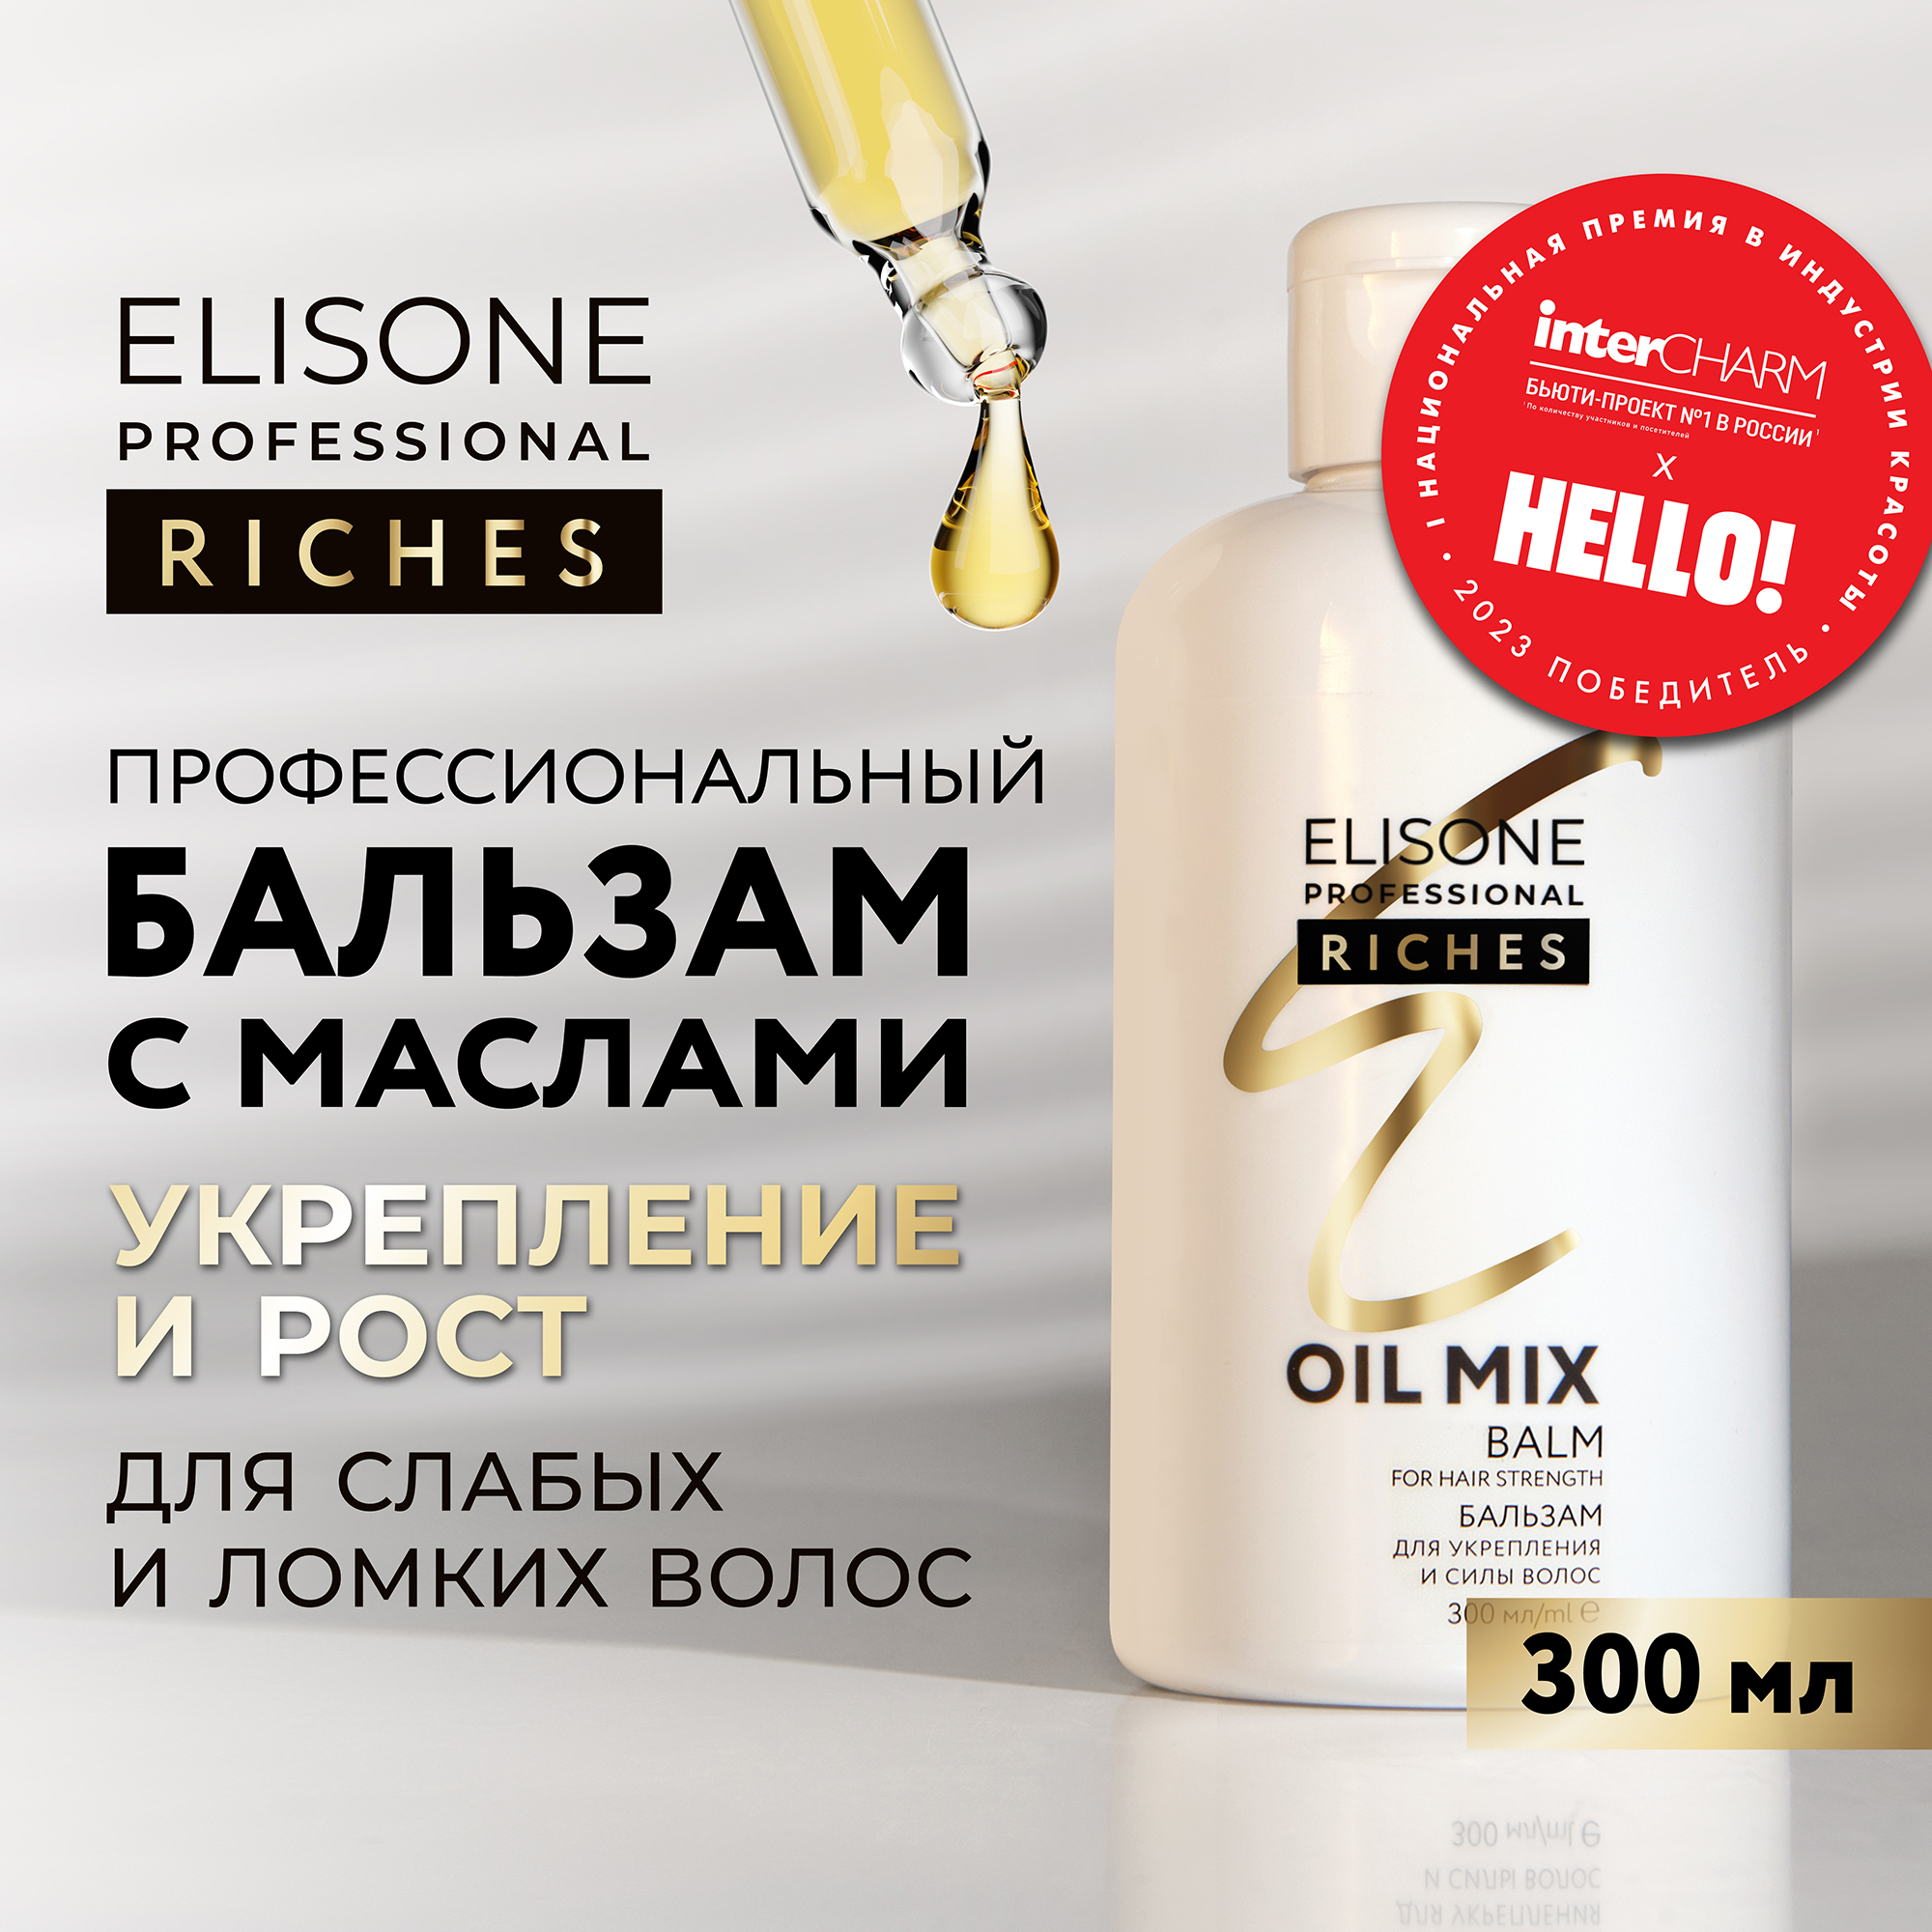 Бальзам RICHES для укрепления волос ELISONE PROFESSIONAL 300 мл elisone professional riches бальзам для укрепления и силы волос oil mix 300 0